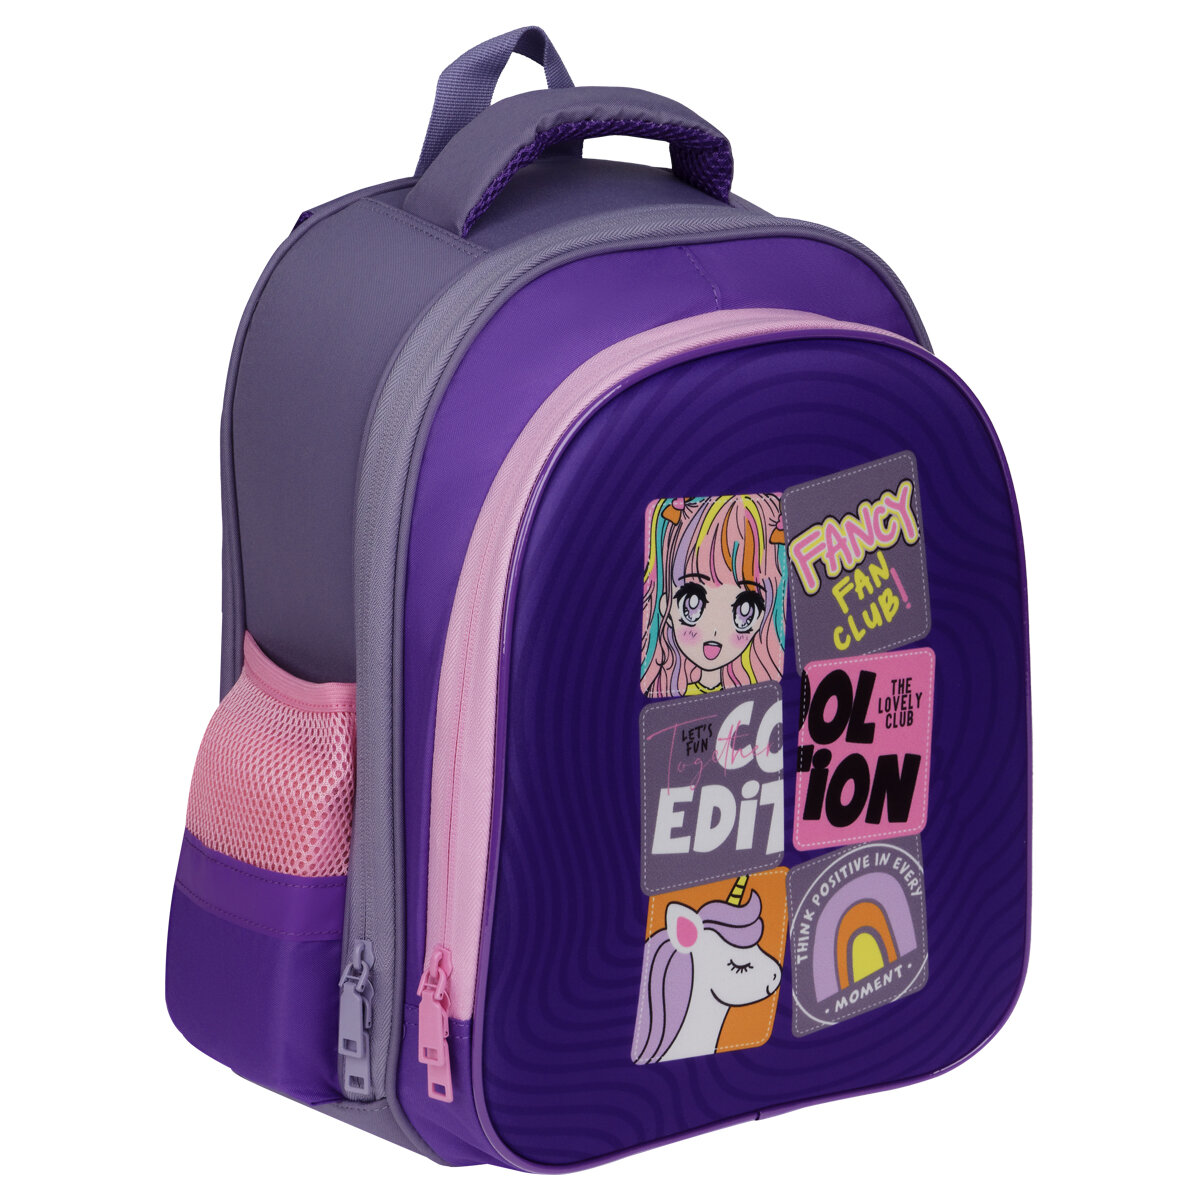 Ранец школьный для младшей школы ArtSpace серии School Friend Light Cool Purple, эргономичный, рюкзак для девочки, с принтом, анатомическая спинка, 2 отделения, 2 кармана, детский, в 1 класс, первокласснику